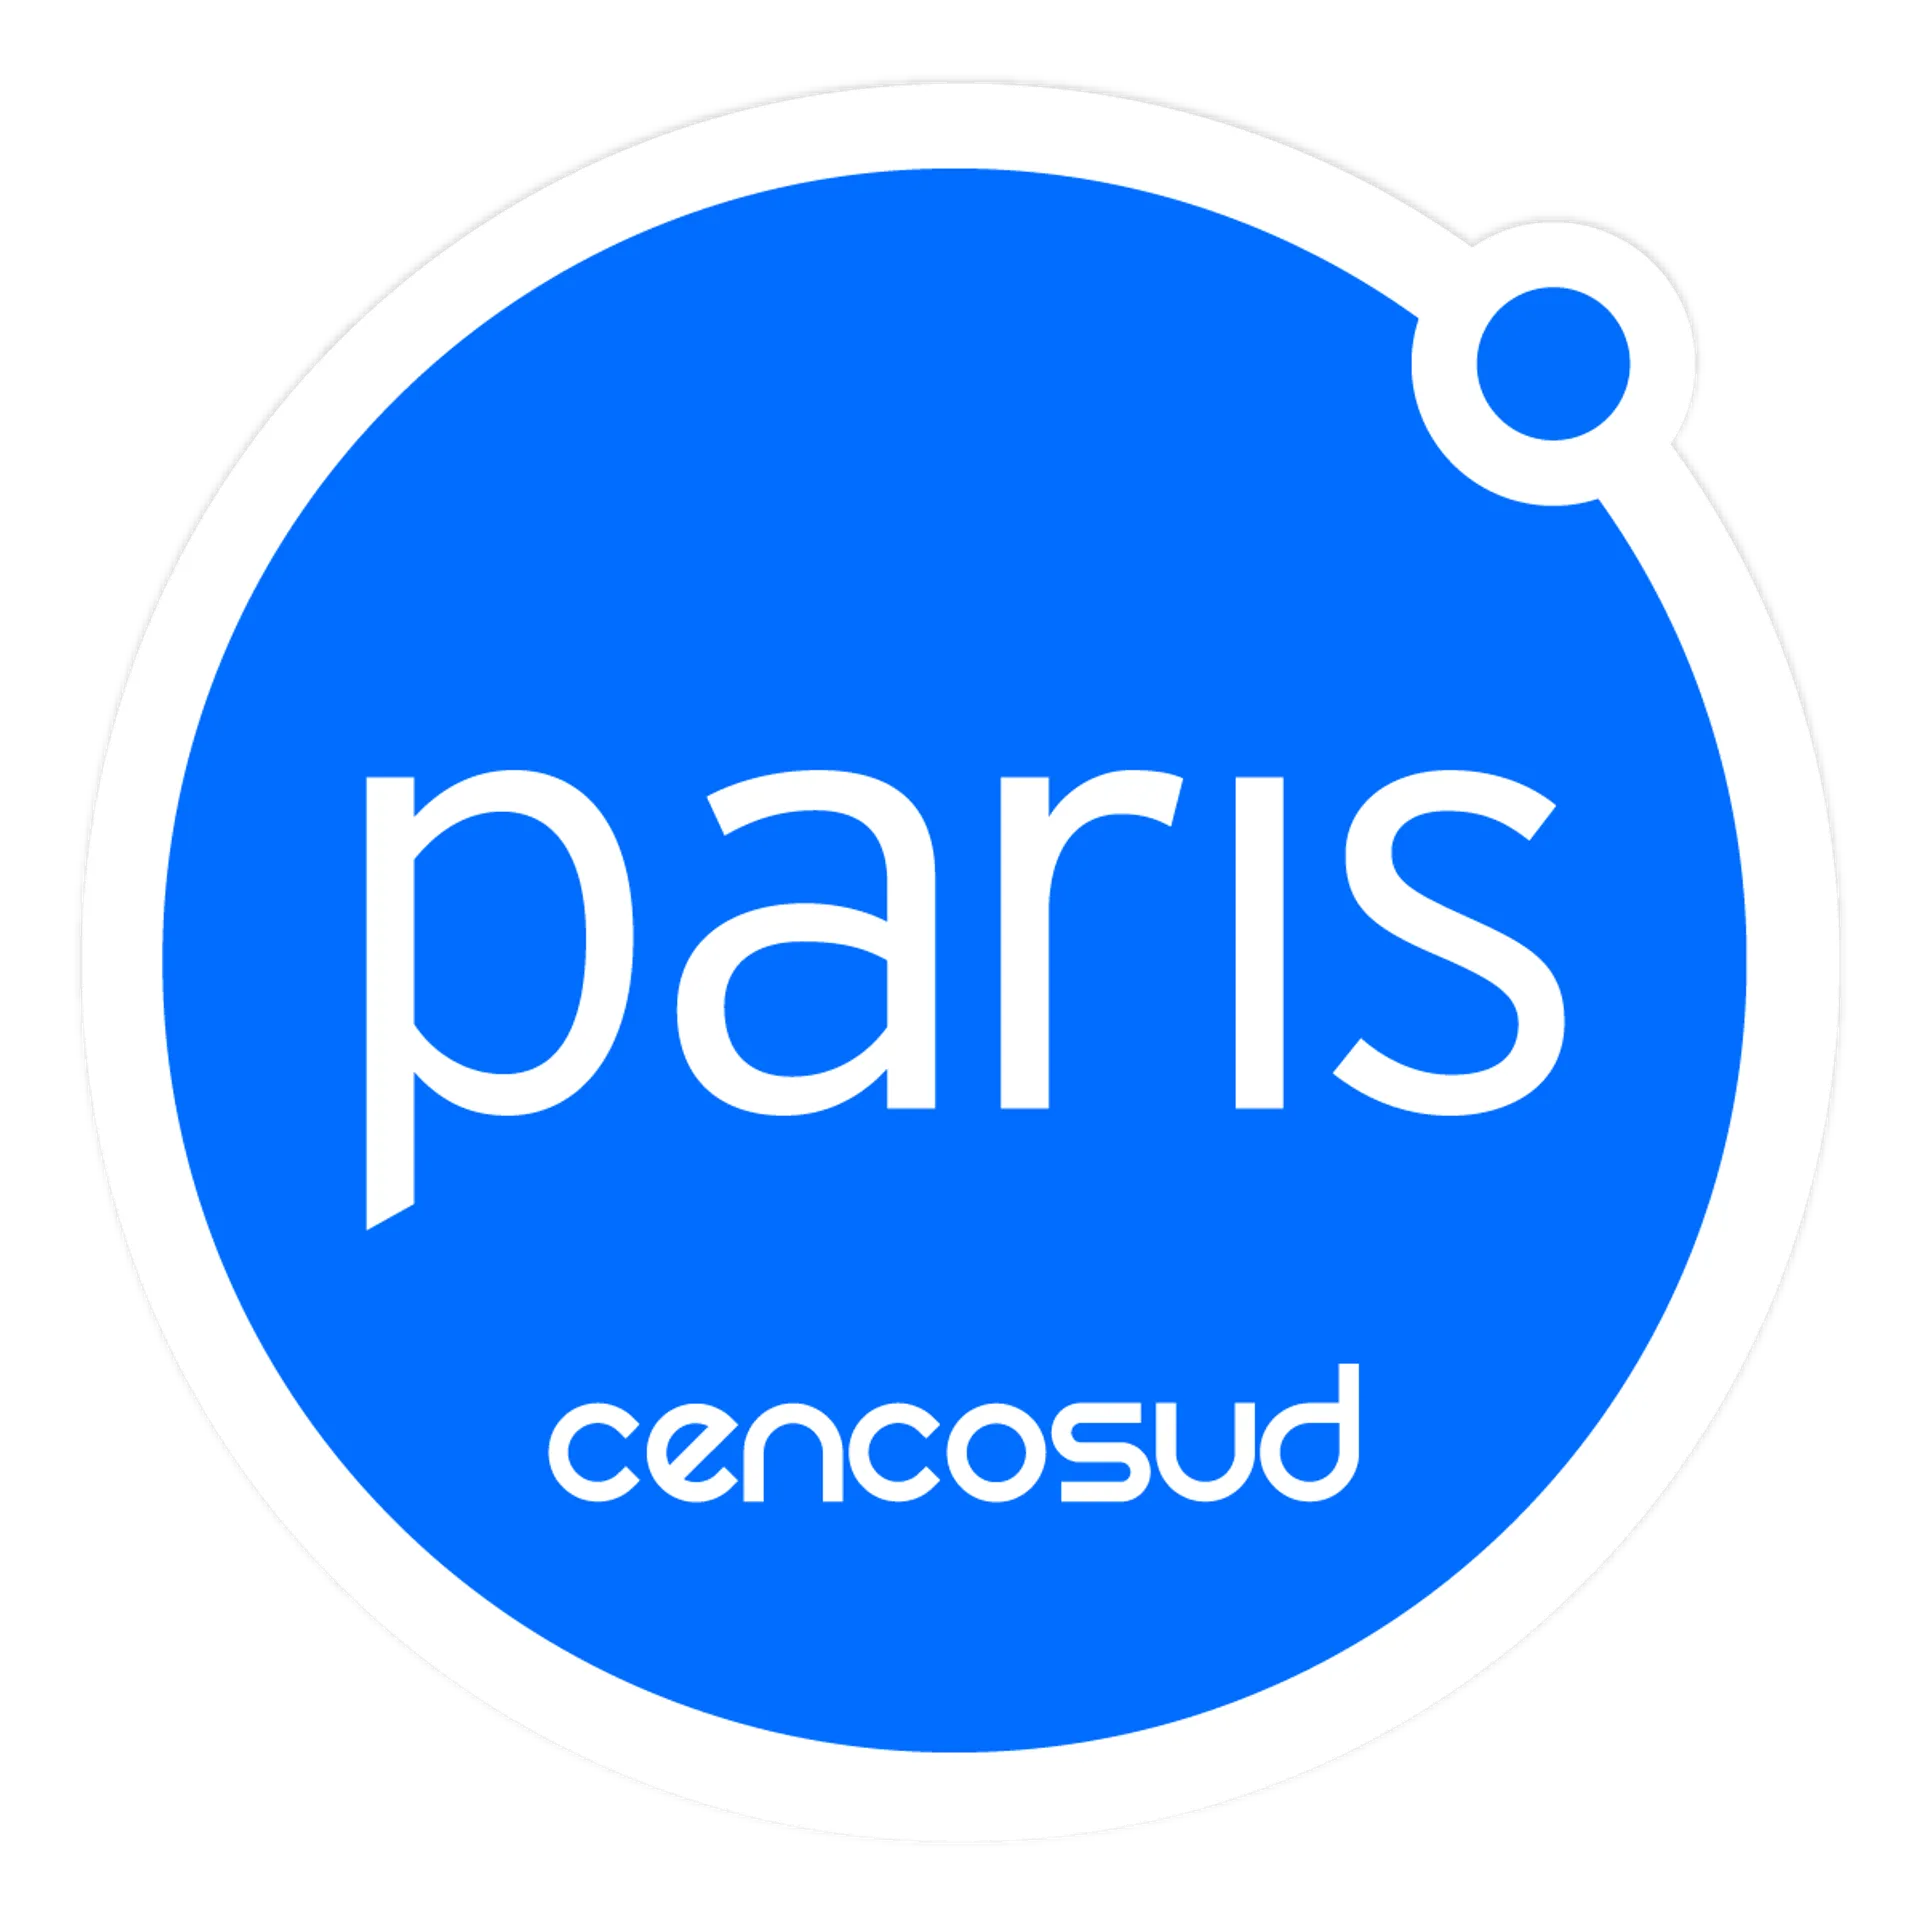 PARIS logo